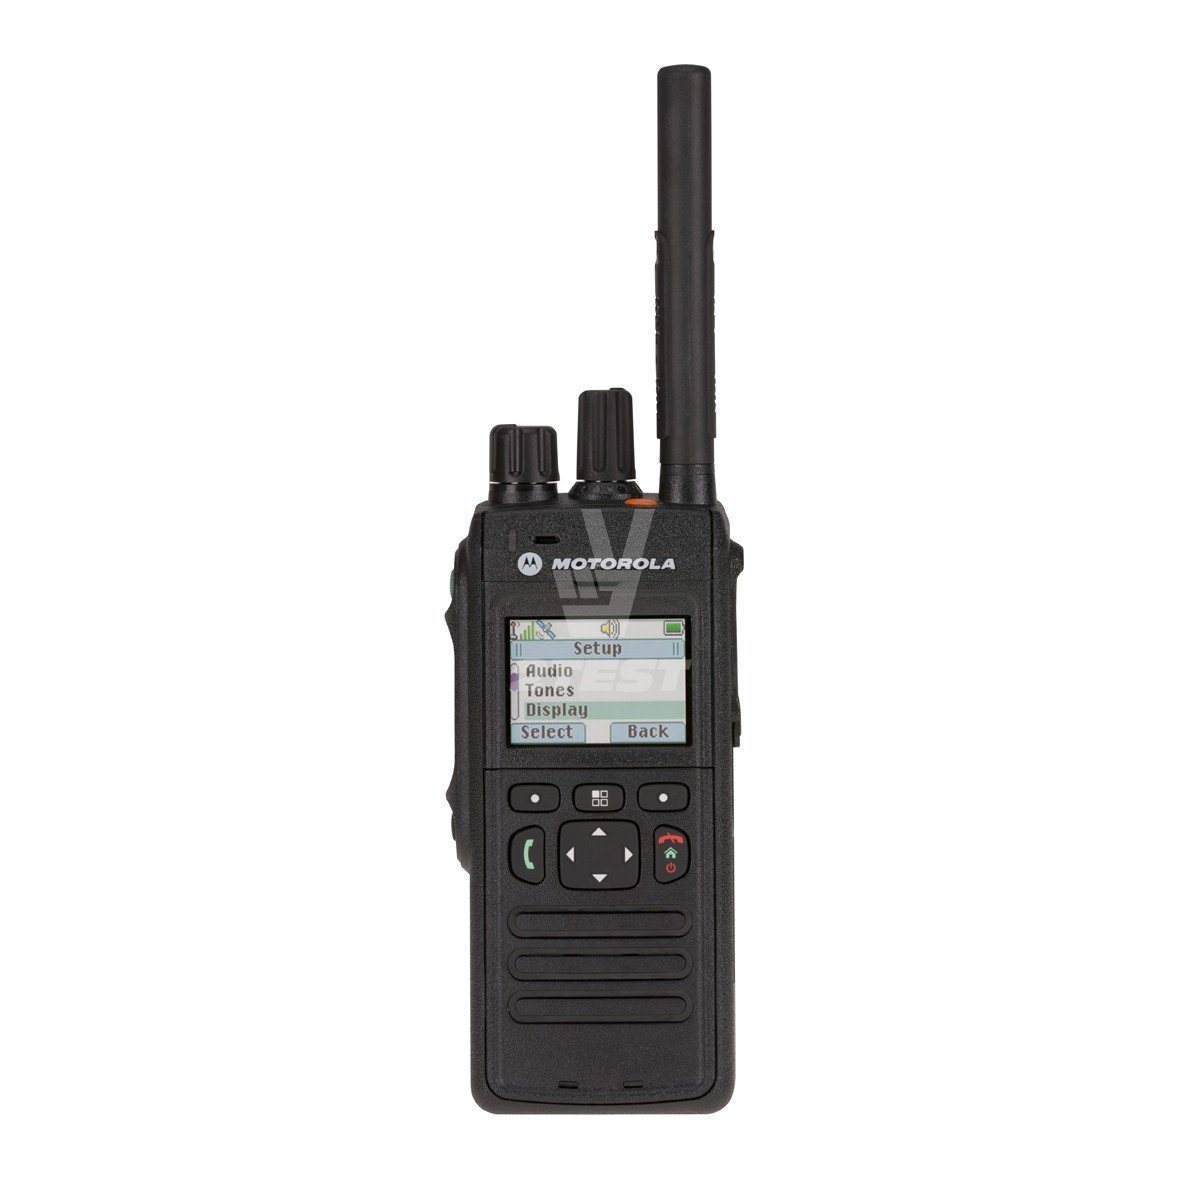 Характеристики Портативные радиостанции TETRA Motorola серии MTP3000